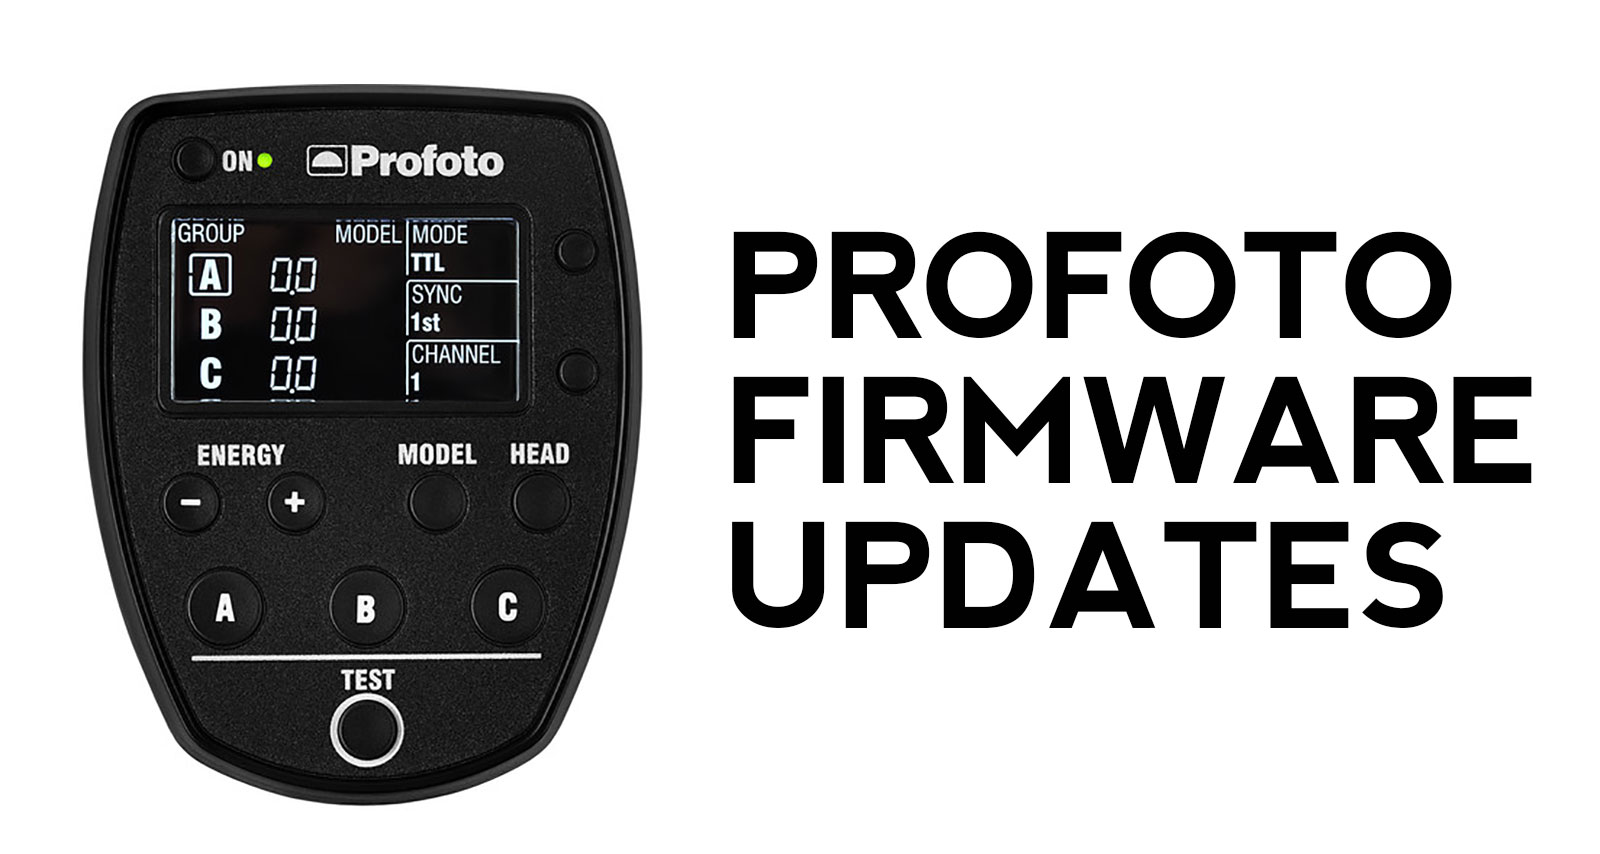 Profoto Firmware Updates for Air Remote TTL, A1, A1X, B1, B1X, B2, B10, B10 Plus, D2 & Pro-10